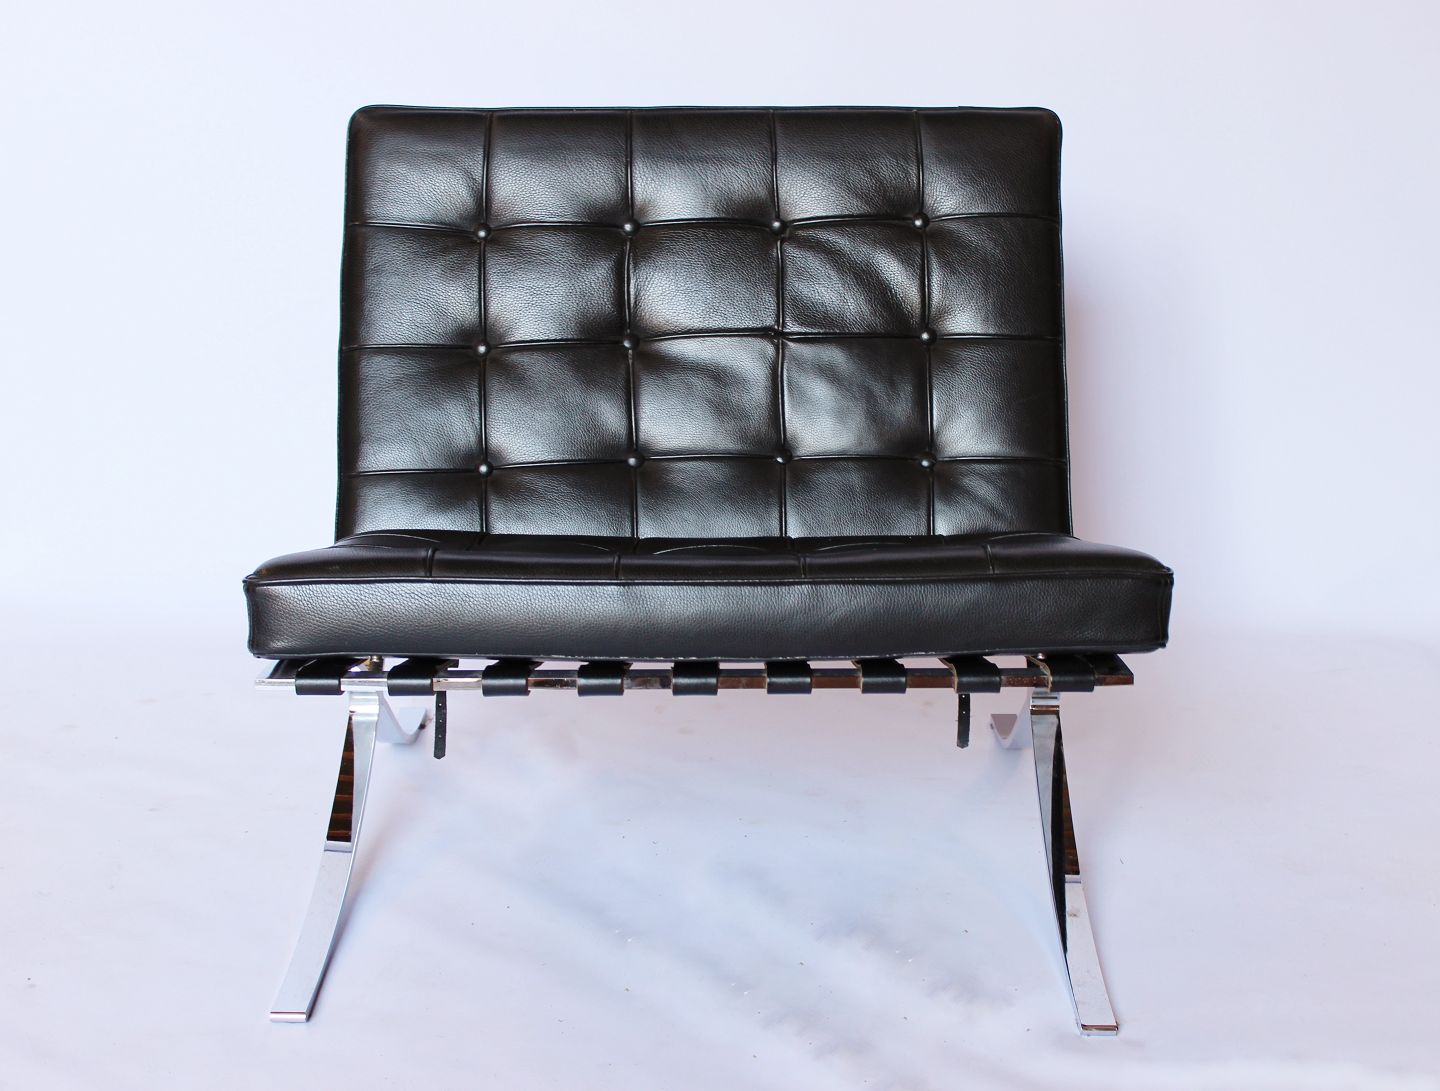 Afdæk mynte Mælkehvid KAD ringen - Techno Barcelona stol i sort læder og stel af krom af Italiensk  design. * 5000m2 - Techno Barcelona stol i sort læder og stel af krom af  Italiensk design. * 5000m2